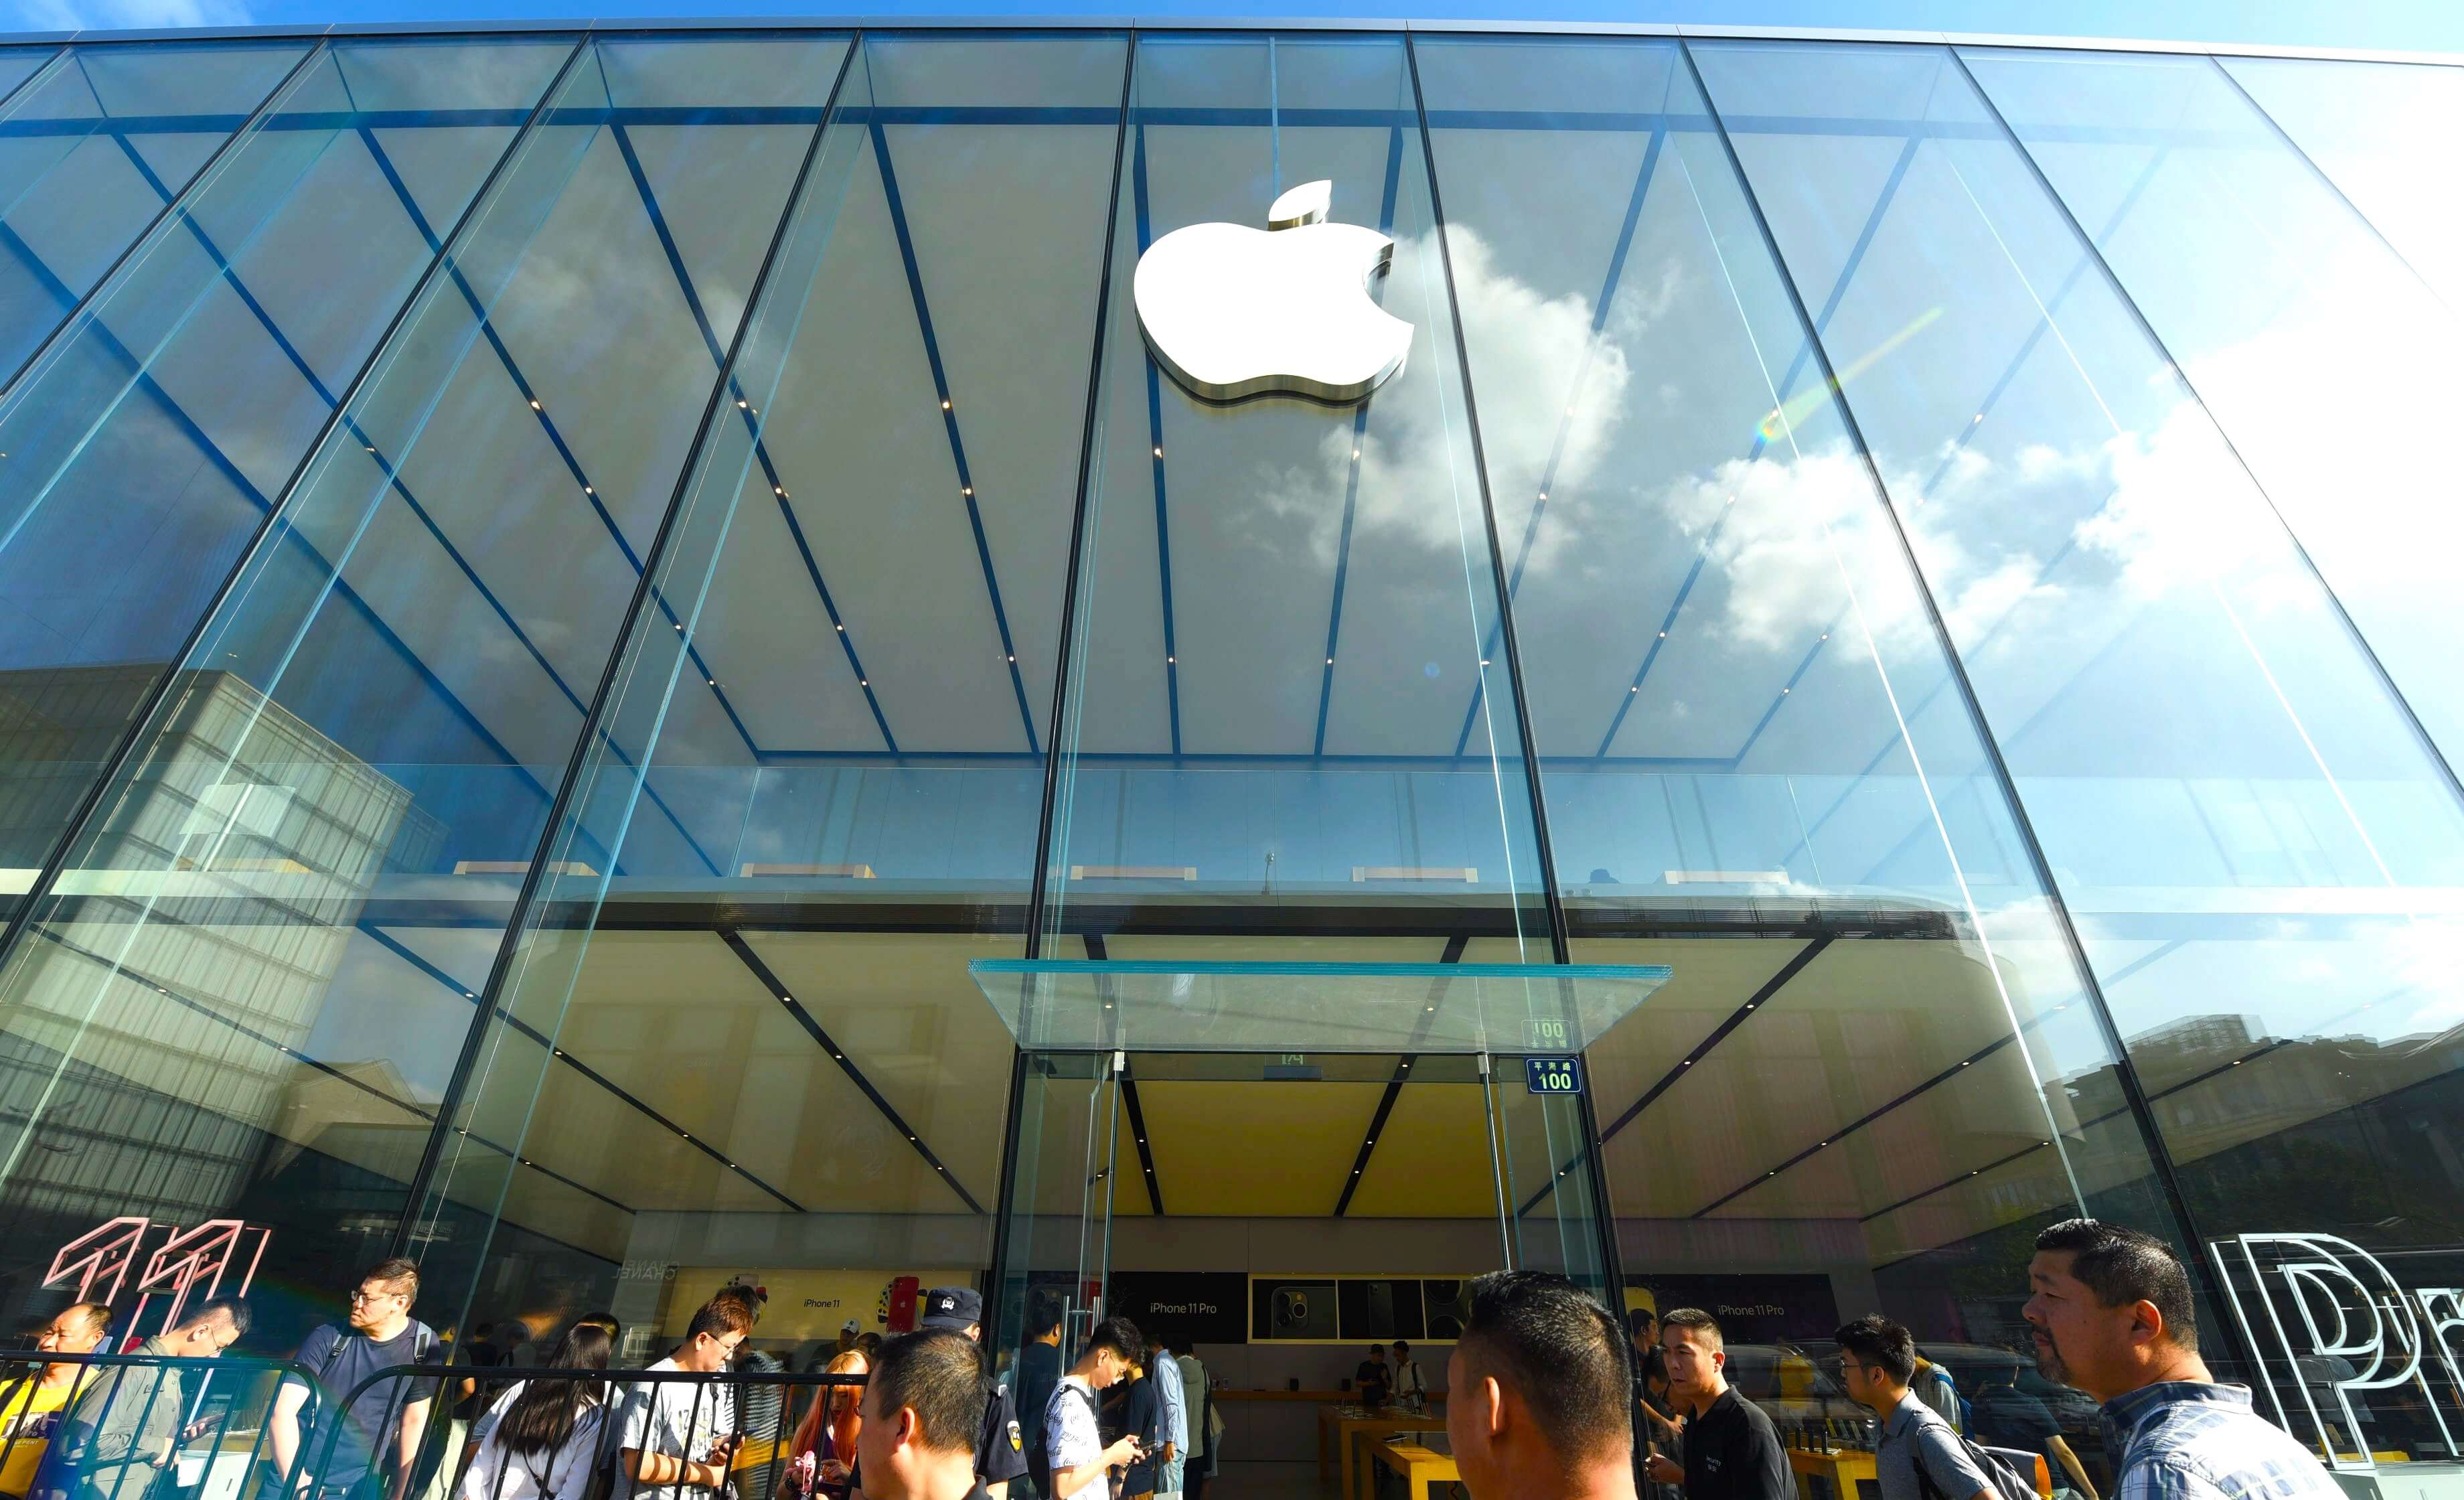 Apple сняла запрет на покупку больше двух iPhone в одни руки